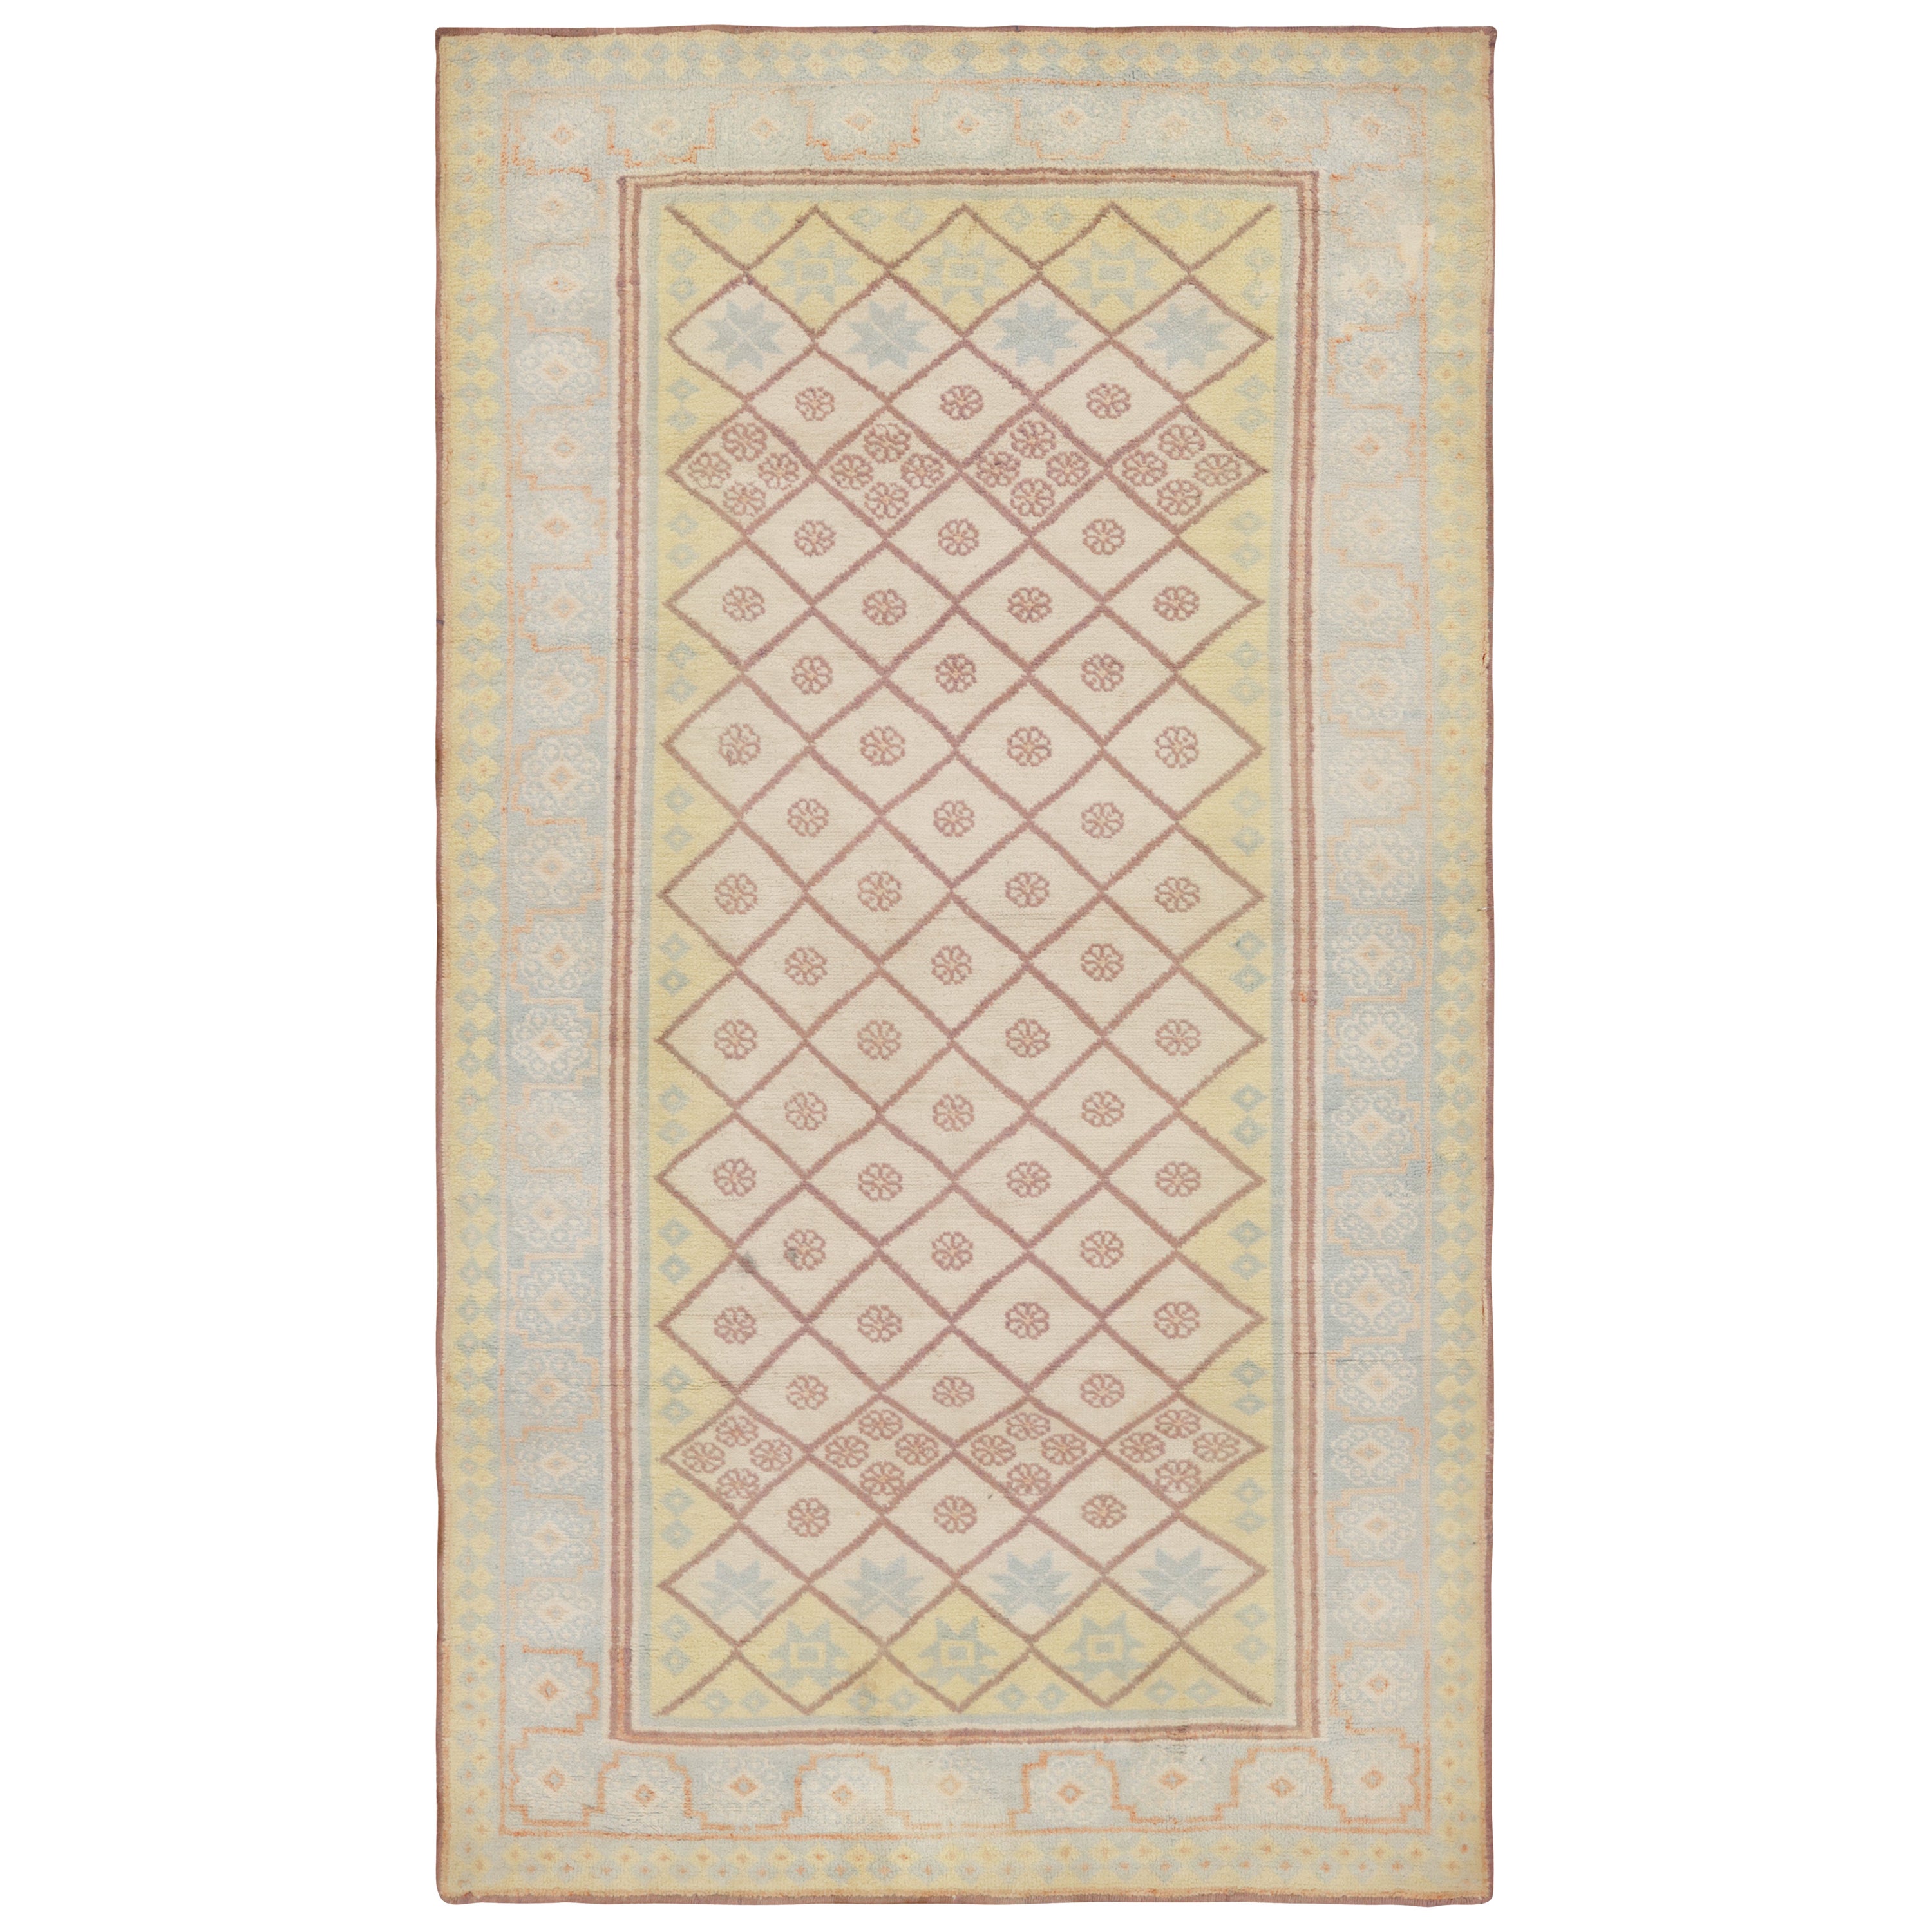 Antiker Agra-Teppich in Cremetönen mit Gitter- und Blumenmustern, von Rug & Kilim